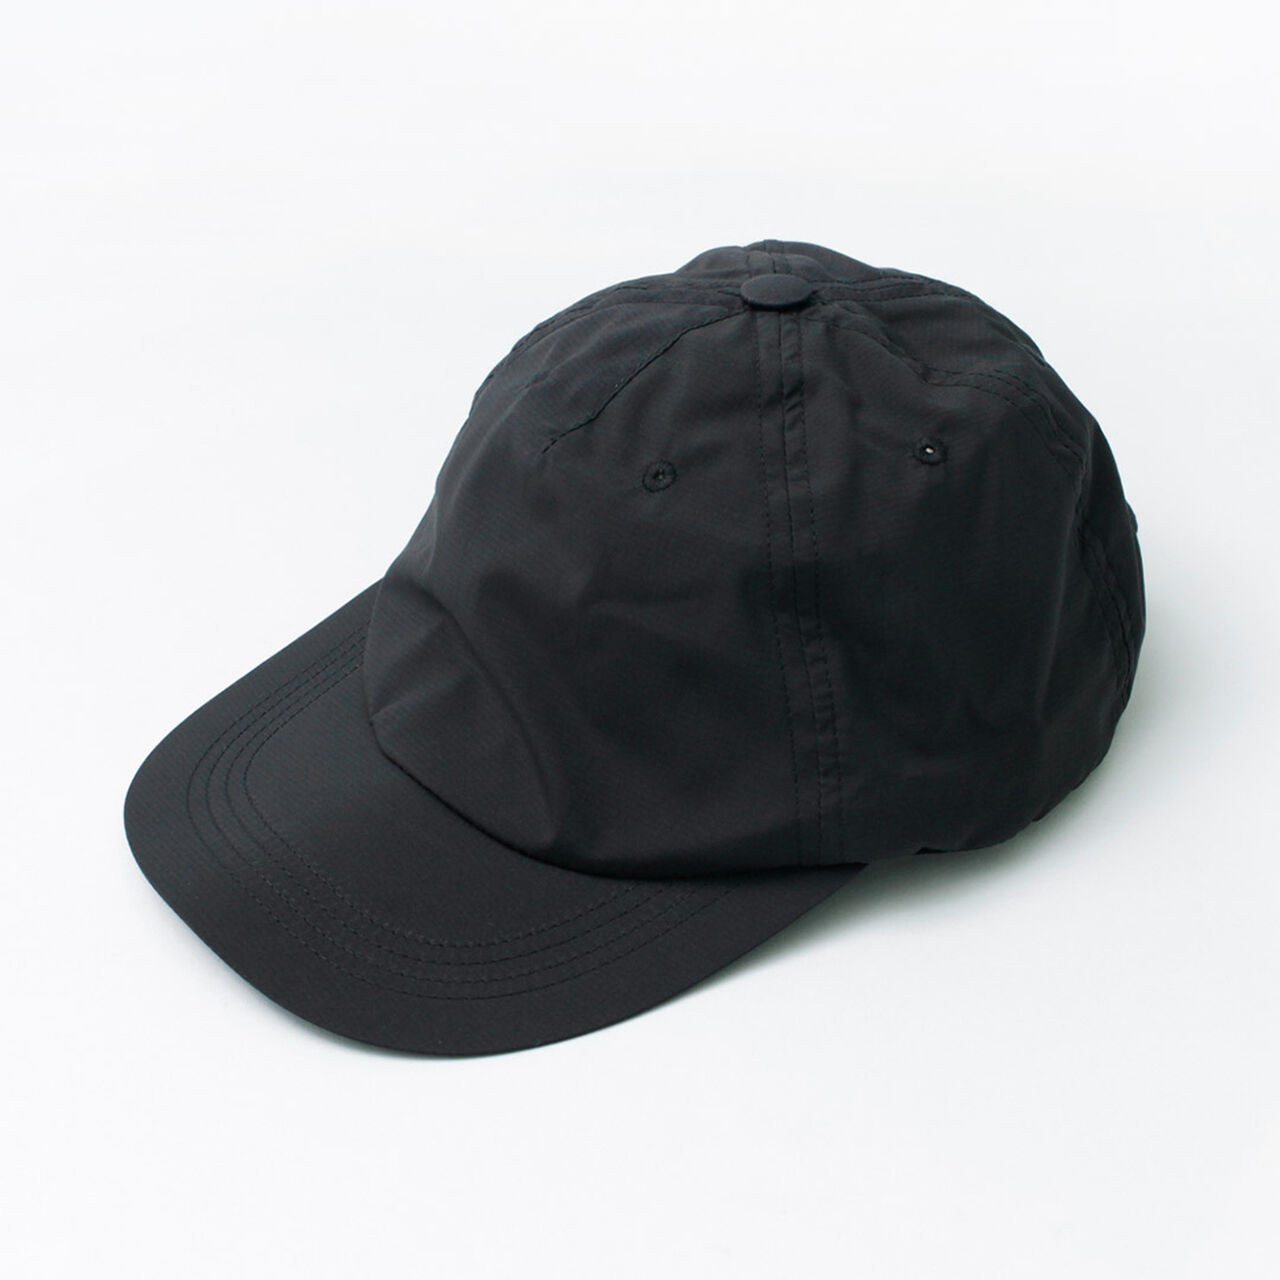 C9 cap/ripstop cap,TrueBlack, large image number 0